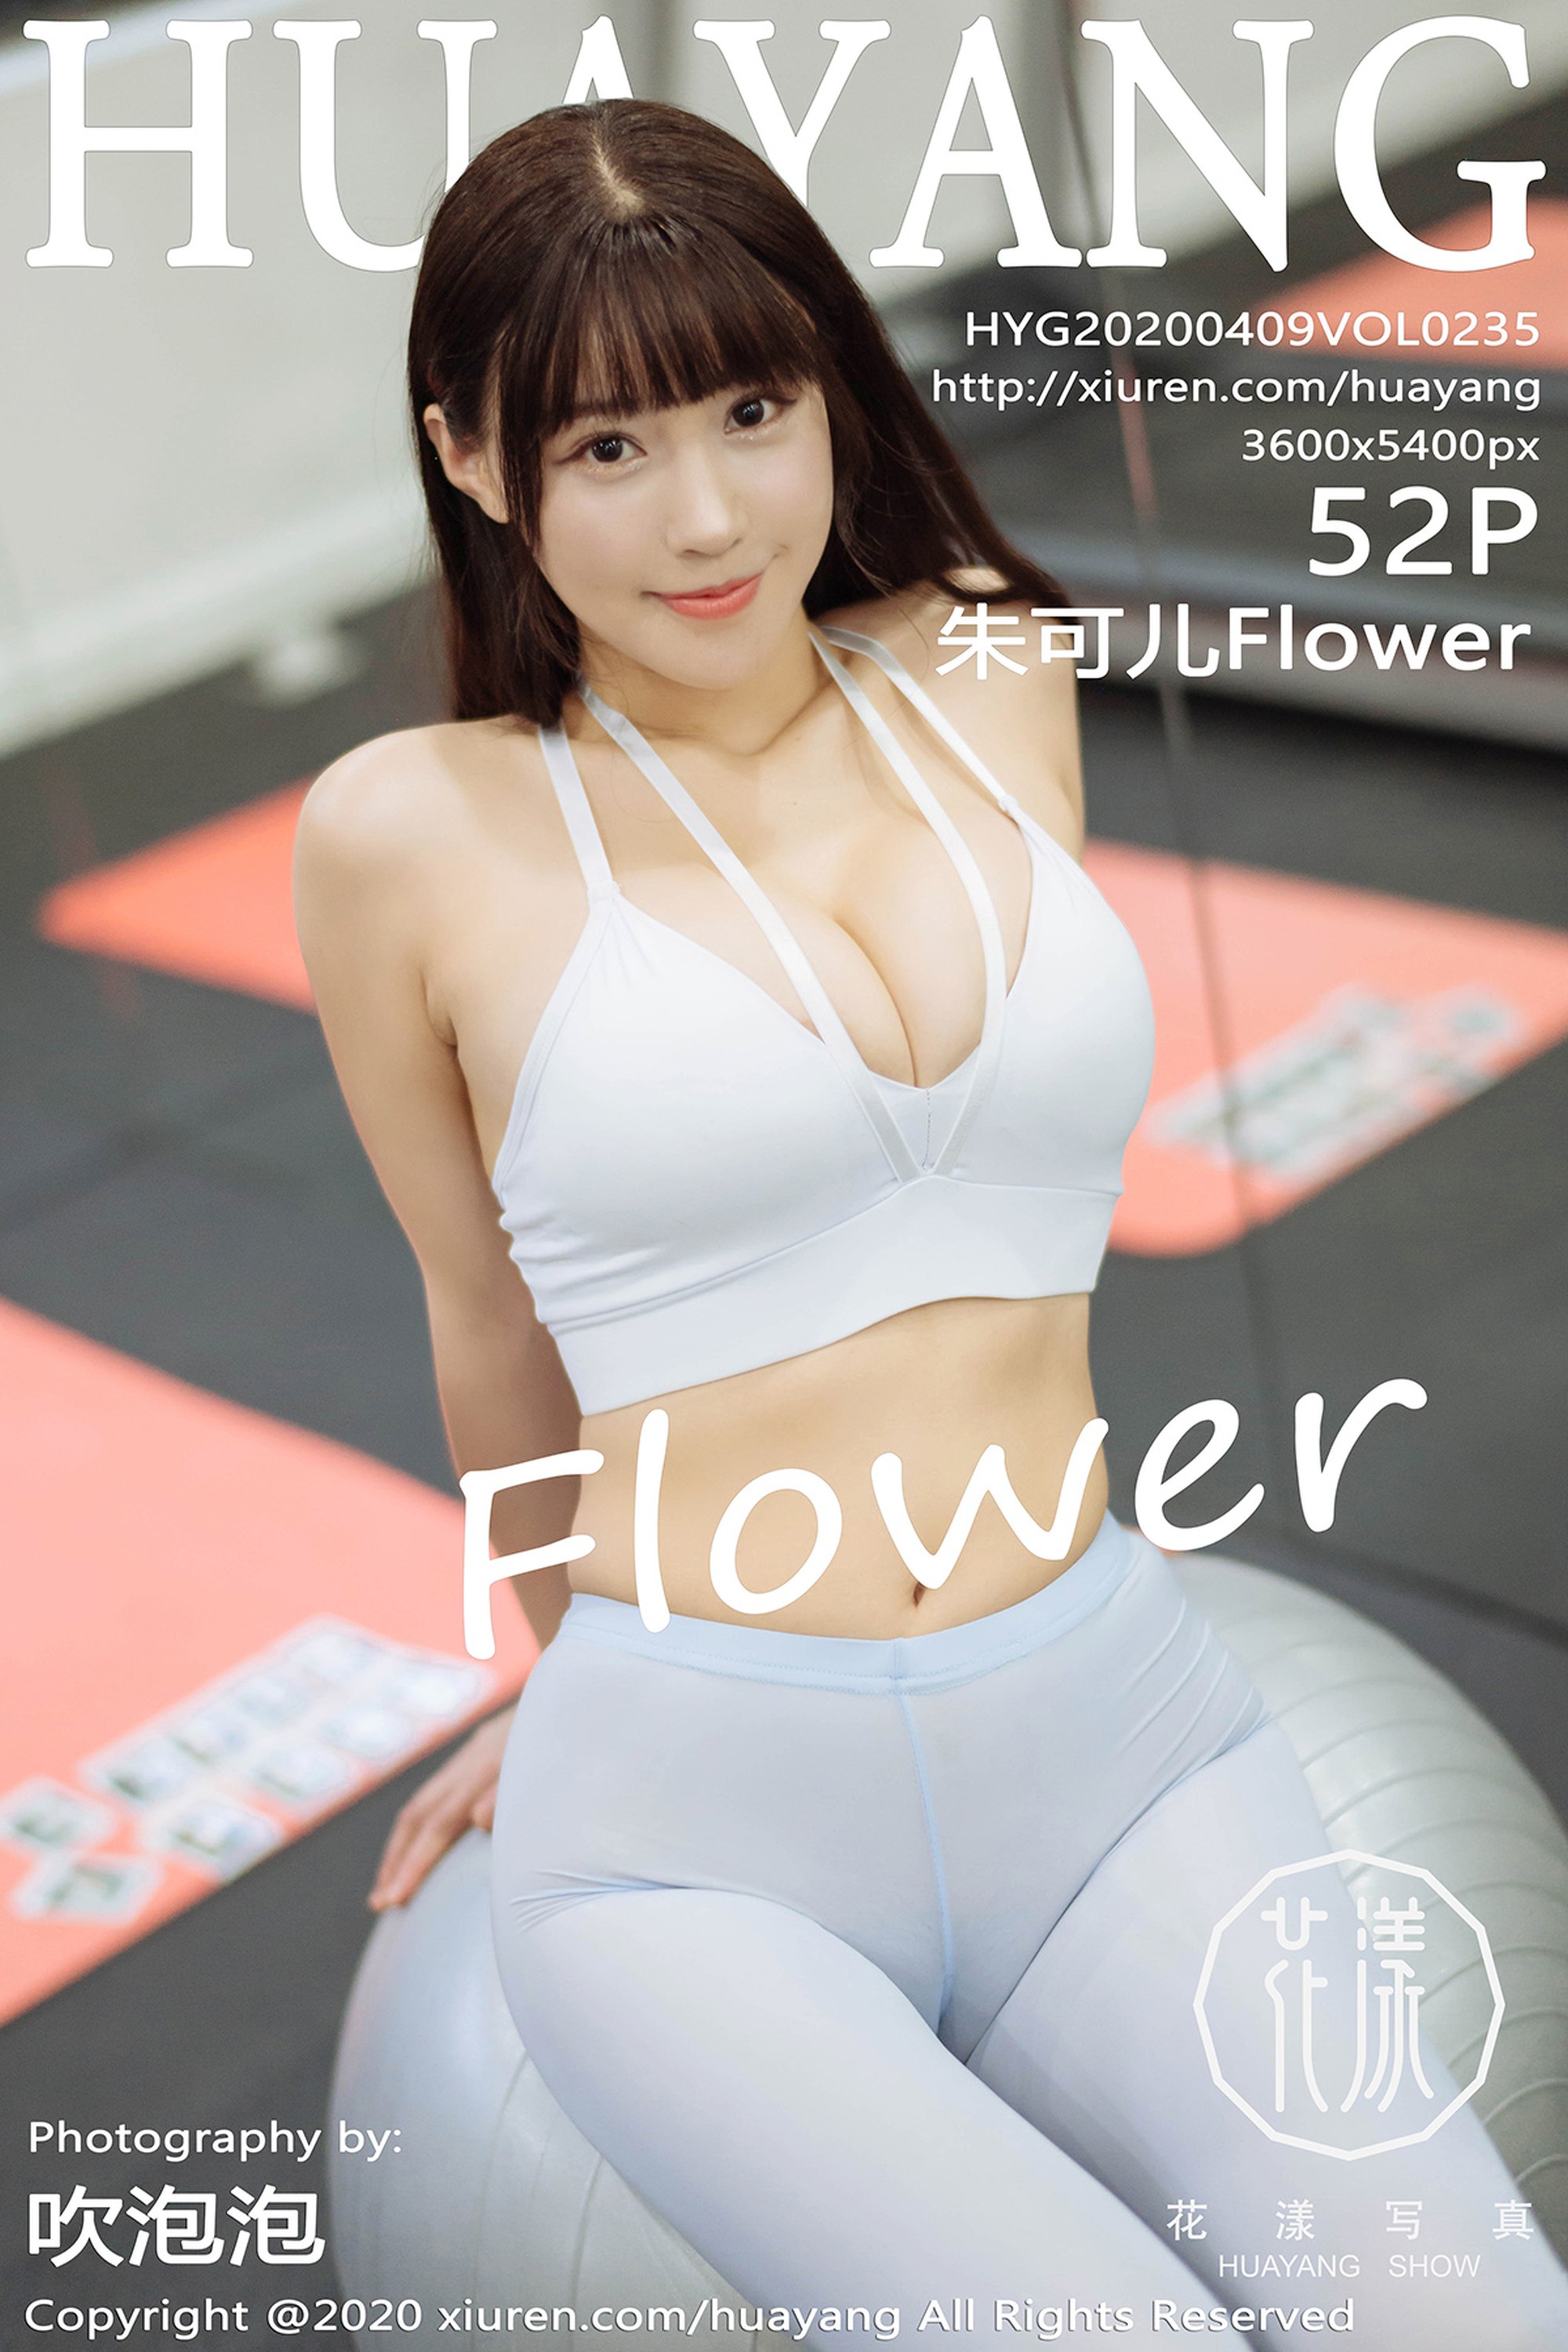 【HuaYang花漾系列】2020.04.09 Vol.235 朱可兒Flower性感寫真【53P】 - 貼圖 - 絲襪美腿 -